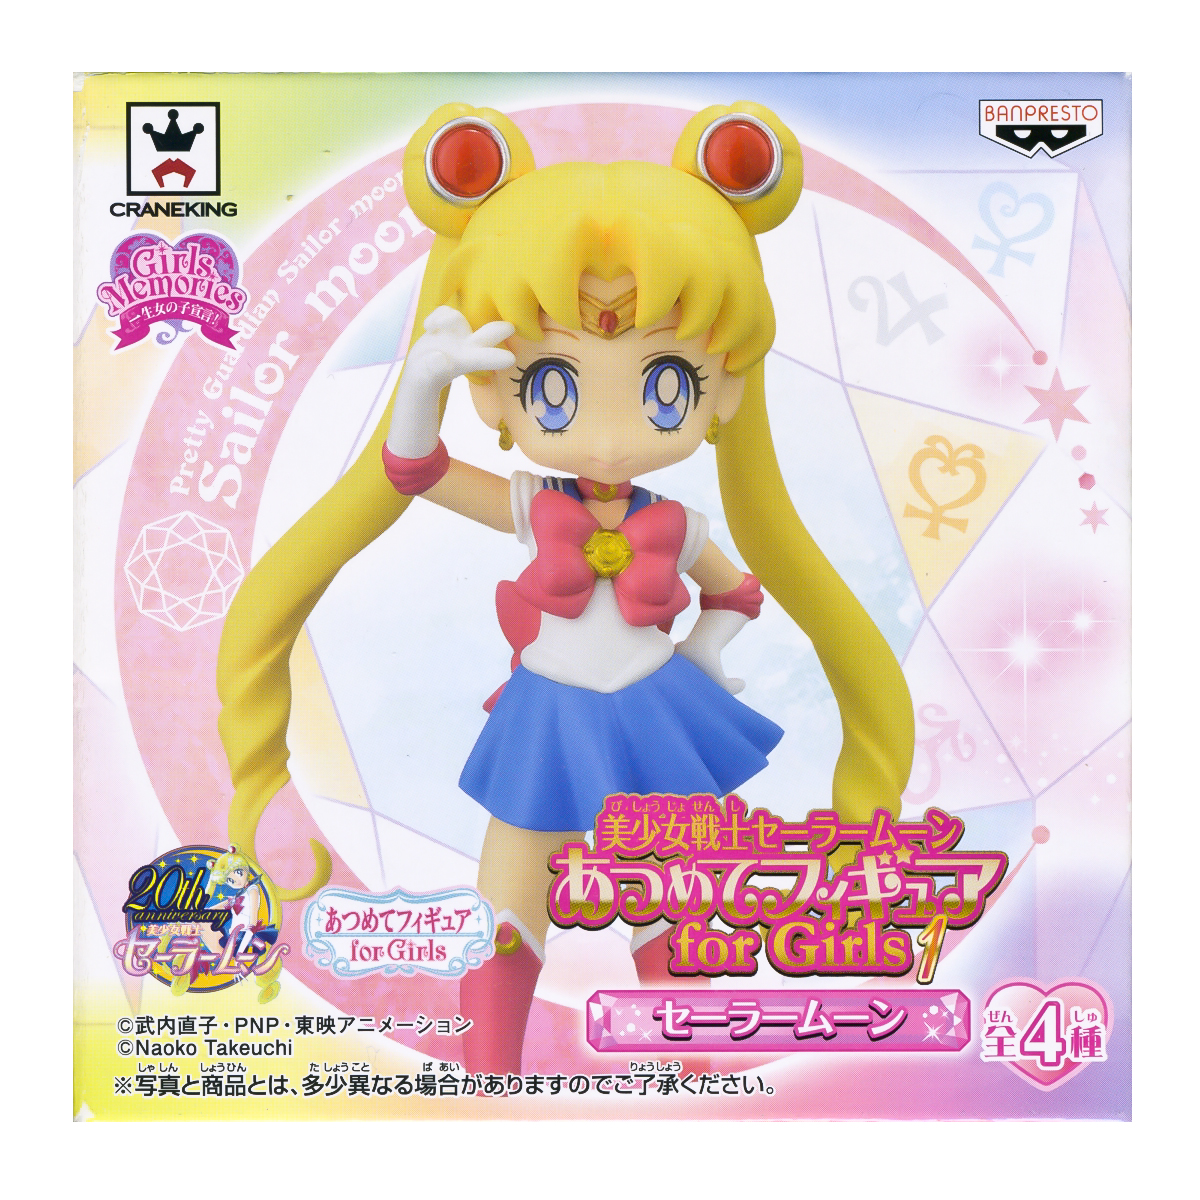 Sailor Moon Atsumete Trading Figure Banpresto Anime Statue Doll 20th Anniversary Special